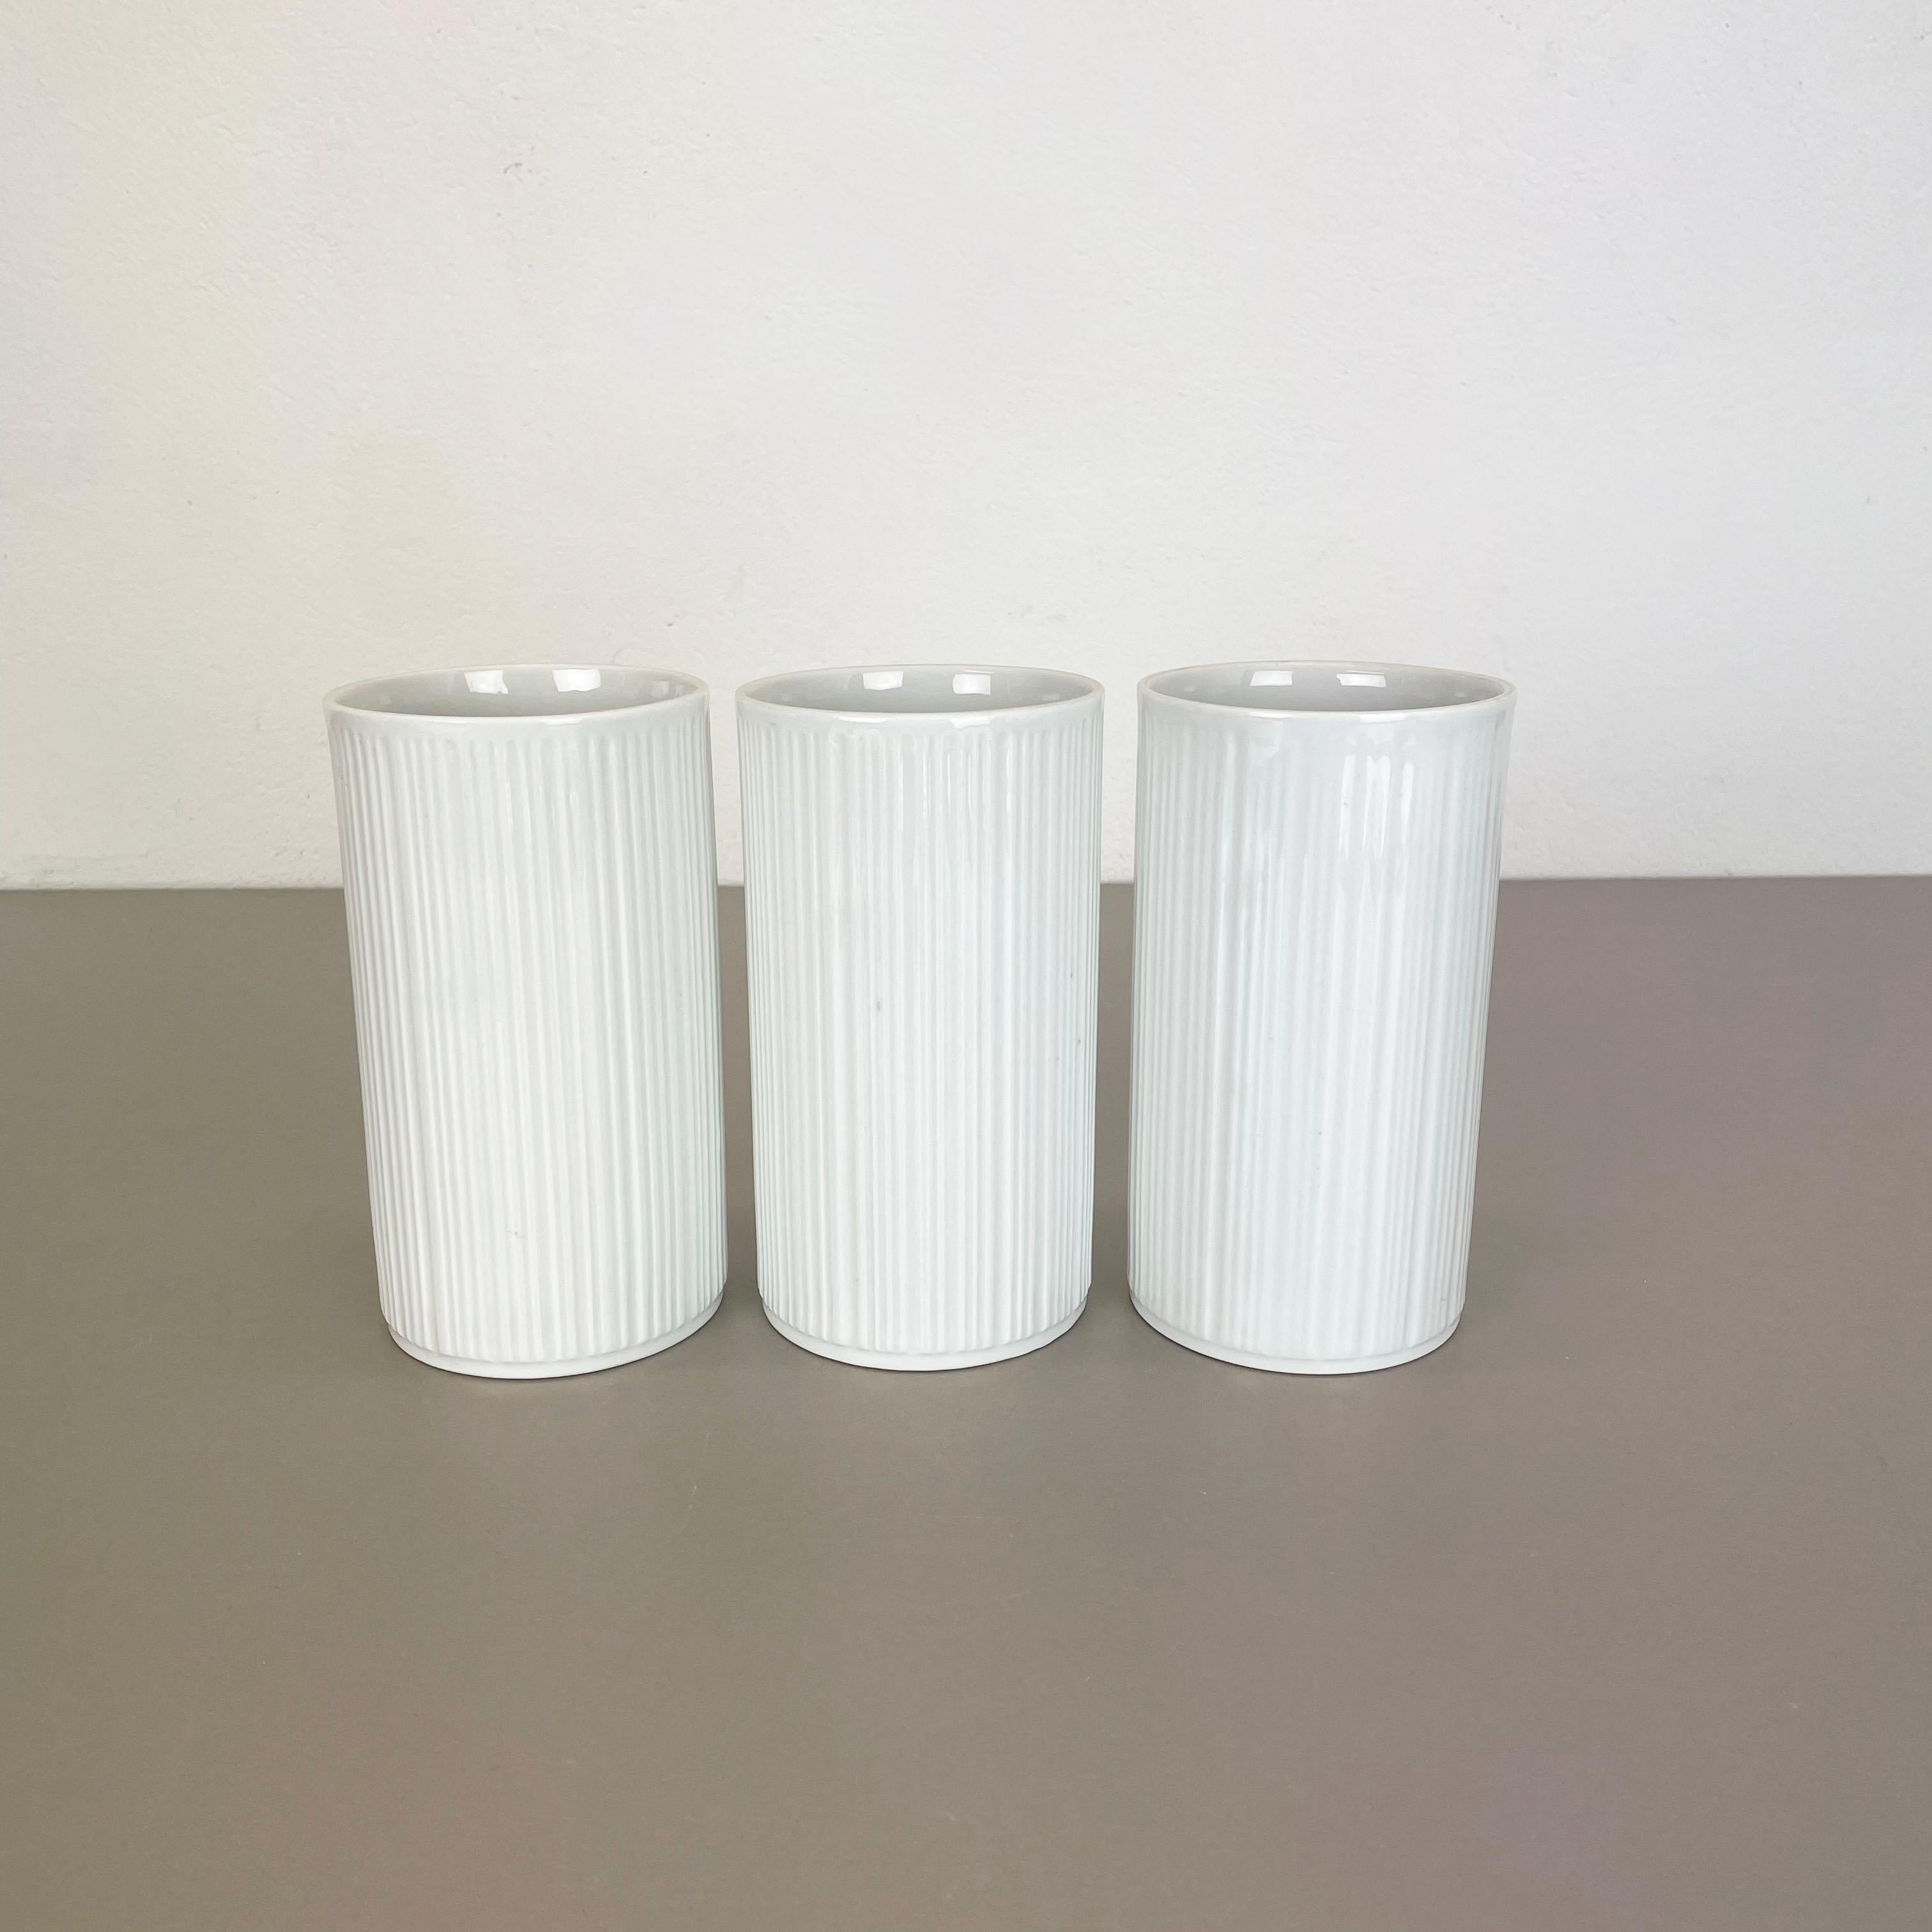 Set of 3 OP Art Porcelain Vases by Melitta Minden, Germany, 1970s For Sale 9